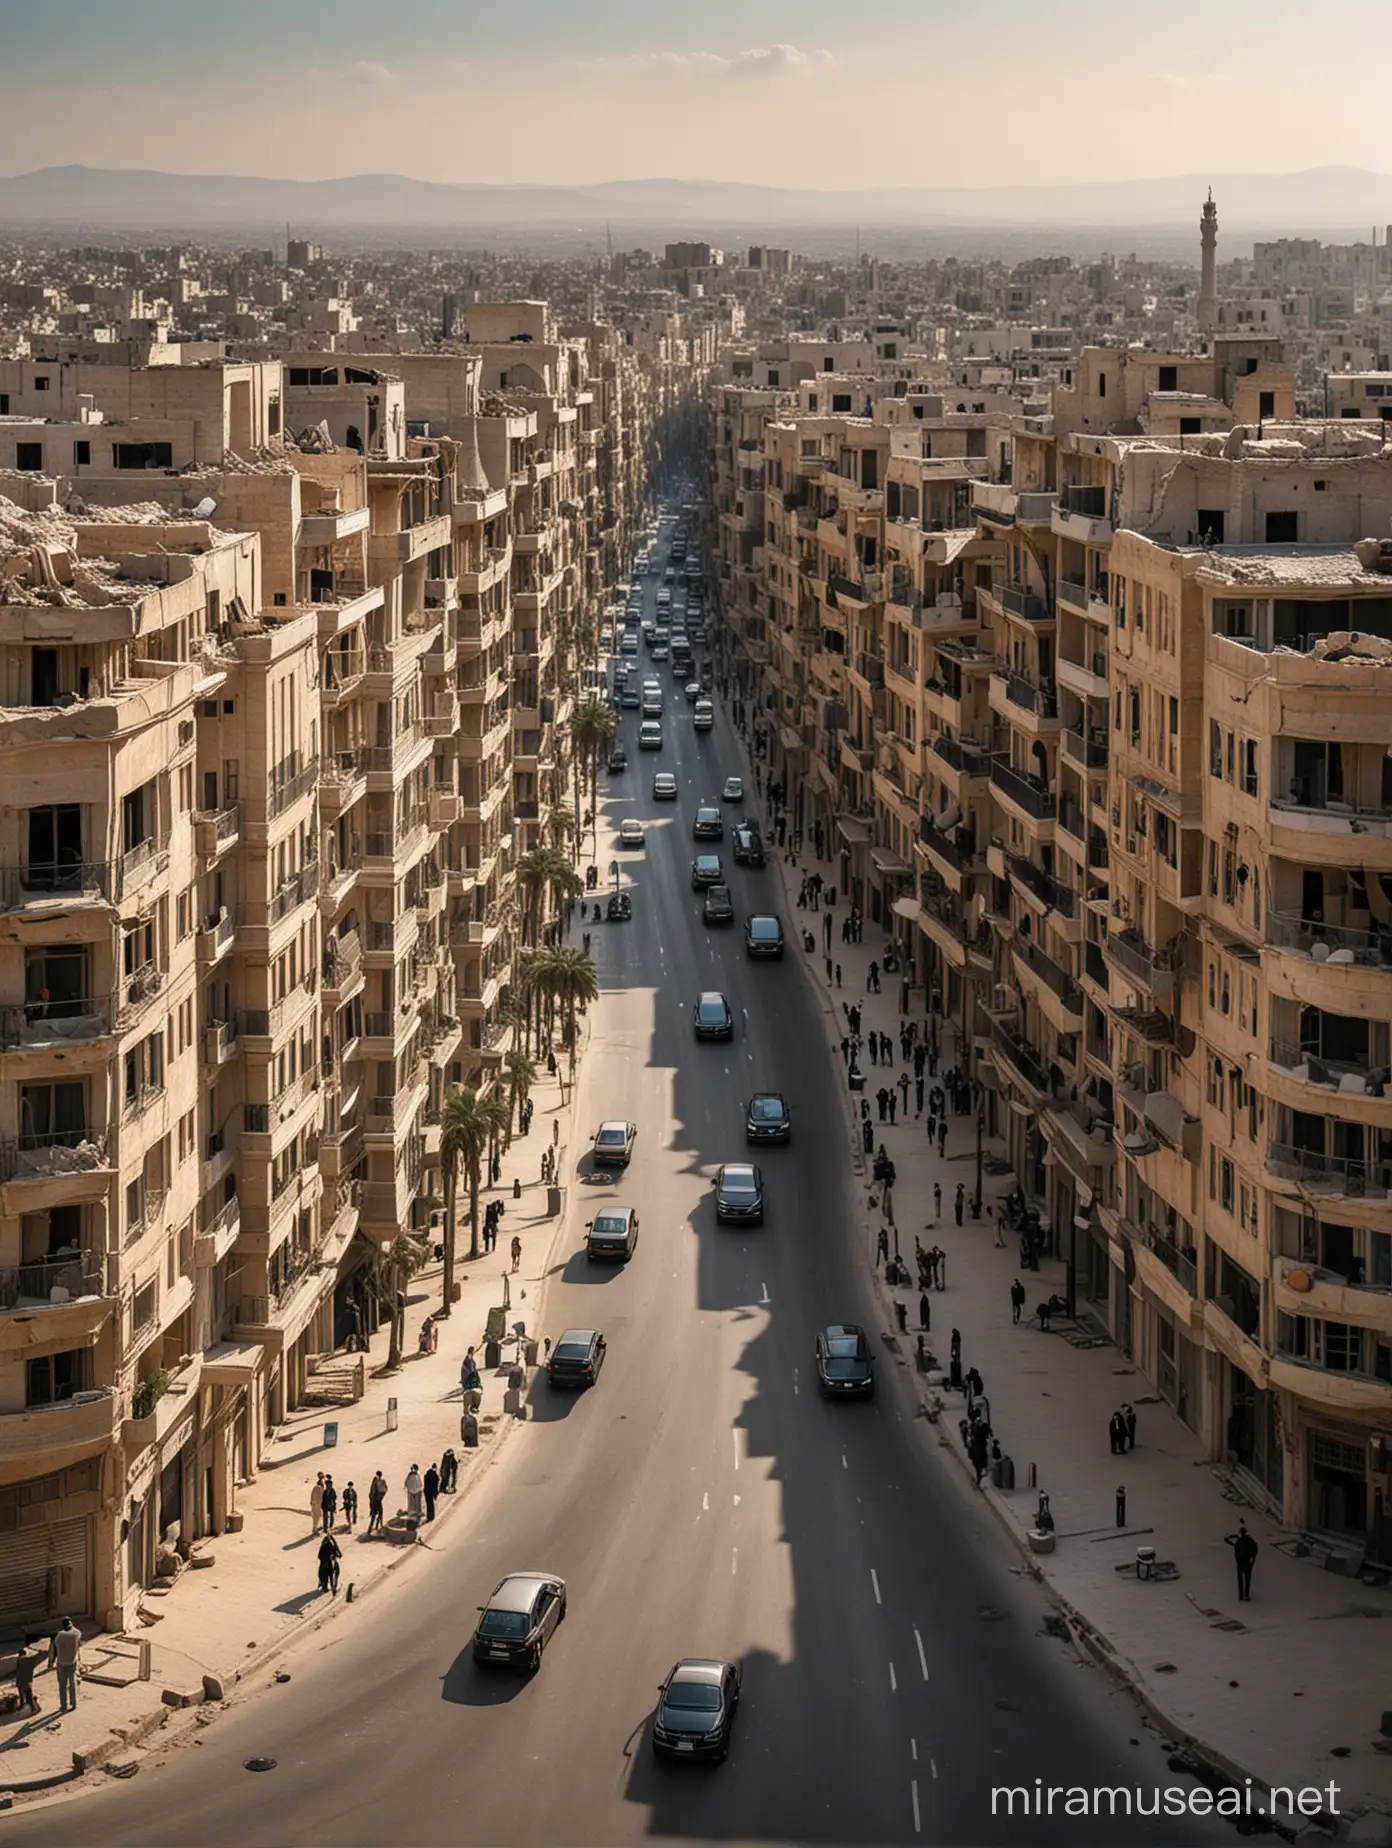 سوريا بعد عشرة سنوات عندما تتطور وتتحدث وتصبح ذات عمران حديث وفخم بشوارع نظيفة ذكية بالاضافة لسيارات فارهة
ابنية وعمارات فخمة ومتطورة